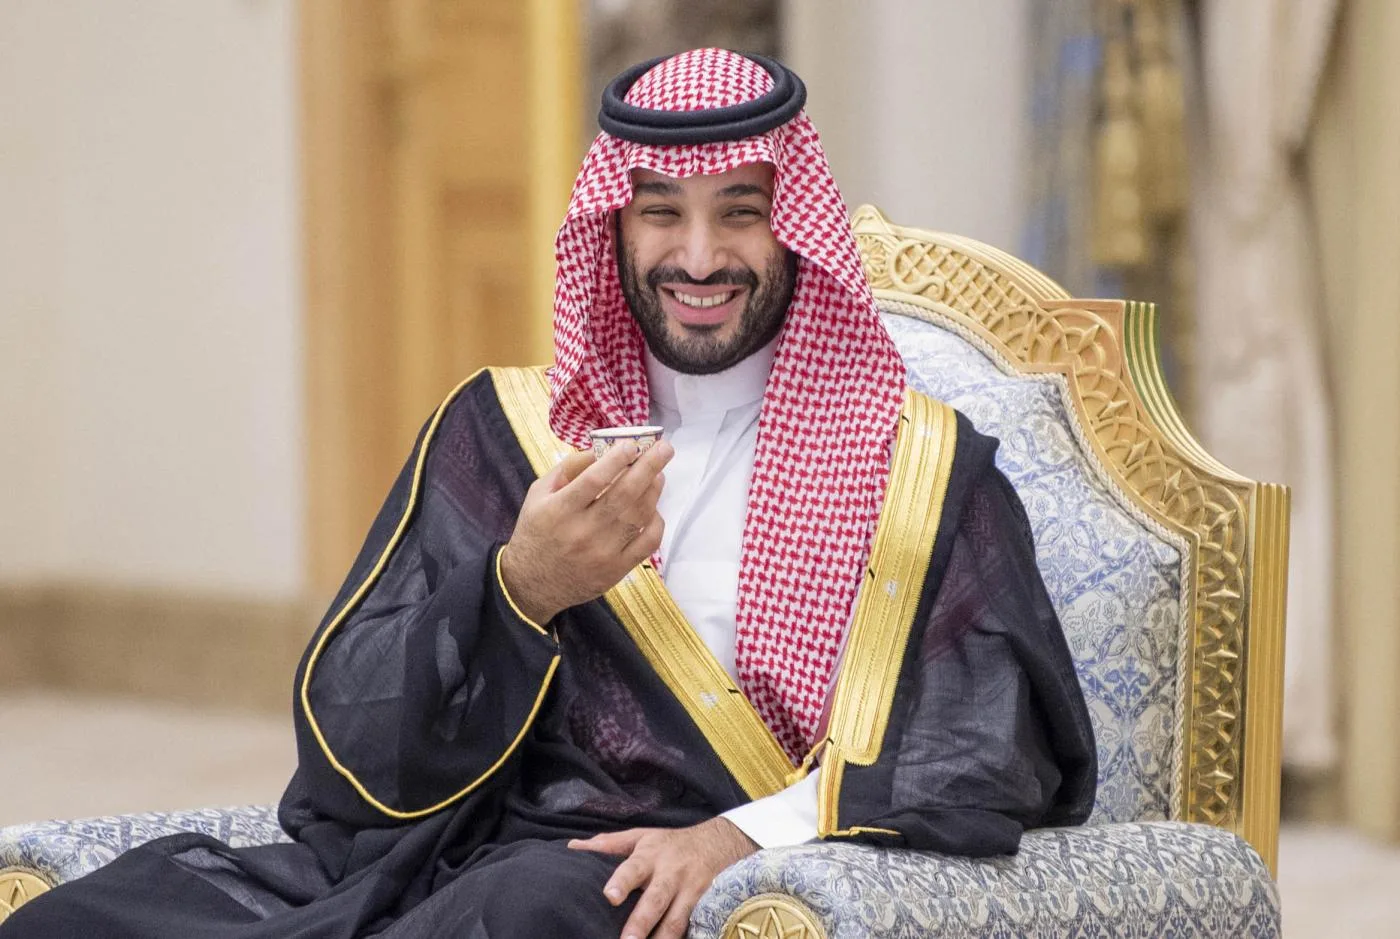 ولي العهد السعودي الأمير محمد بن سلمان خلال حفل استقبال رسمي في أبو ظبي، 7 كانون الأول/ ديسمبر 2021.